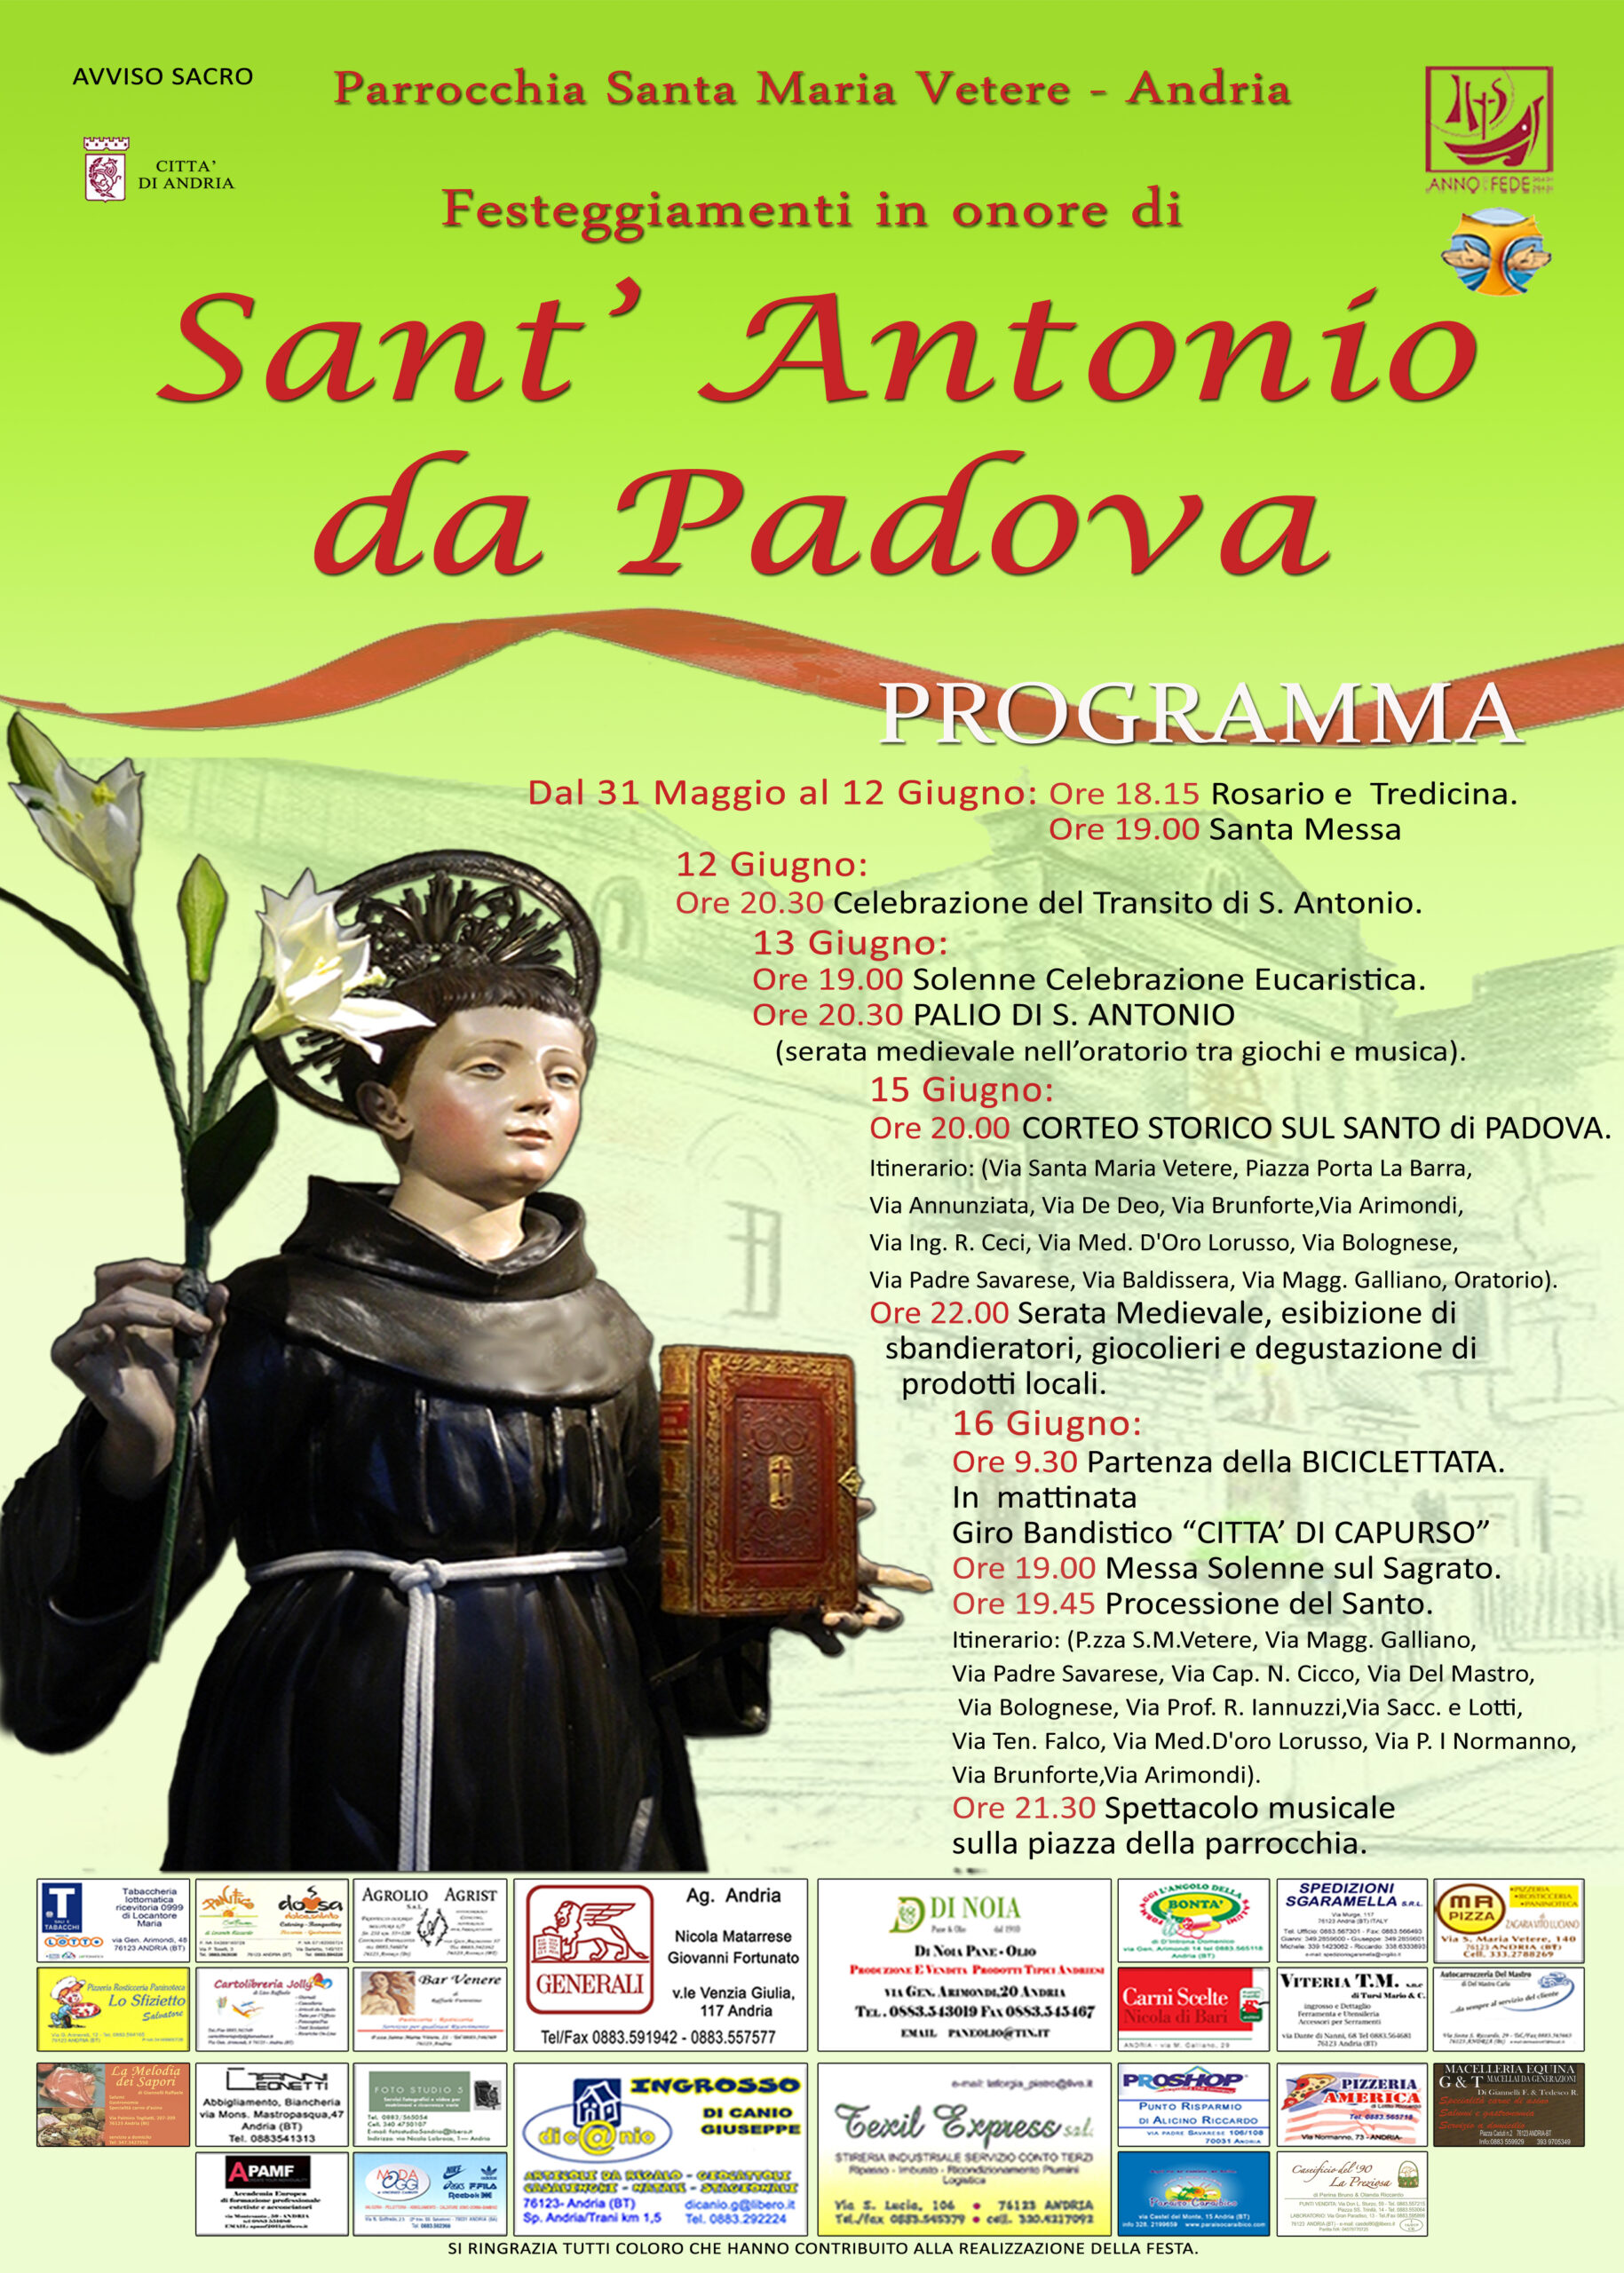 locandina festa sant'antonio edizione 2013 andria